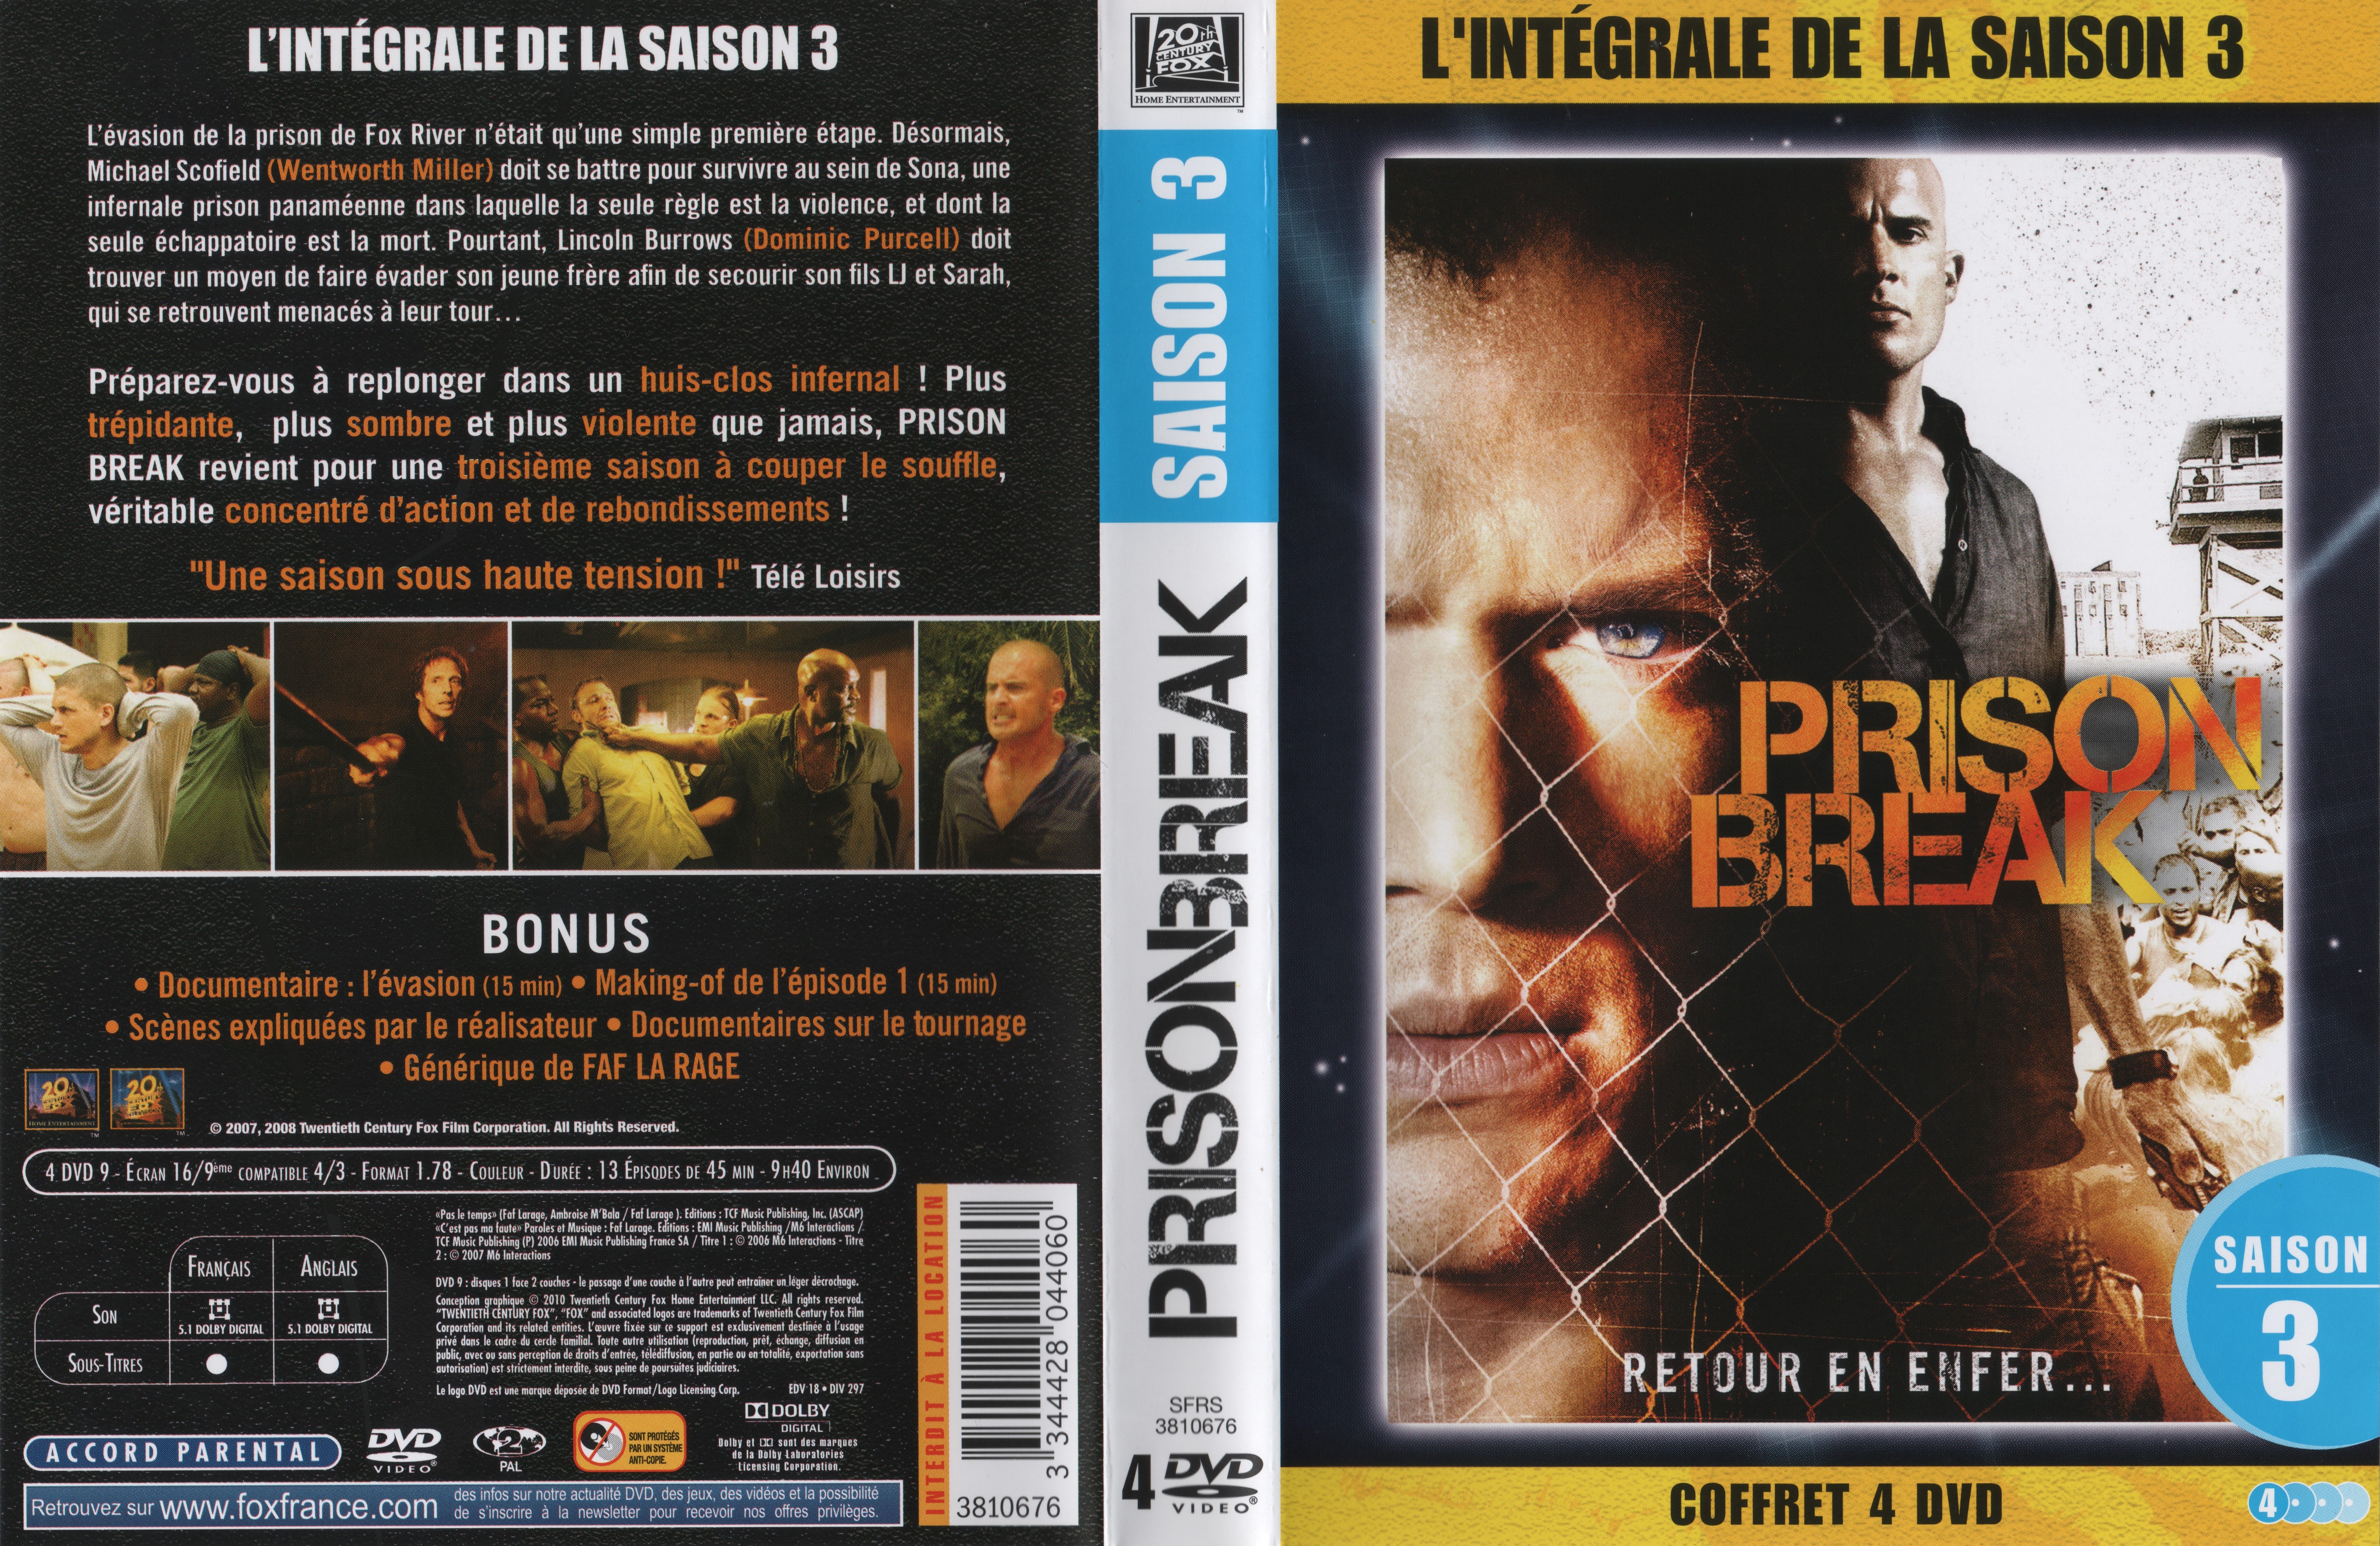 Jaquette DVD Prison break saison 3 COFFRET v2